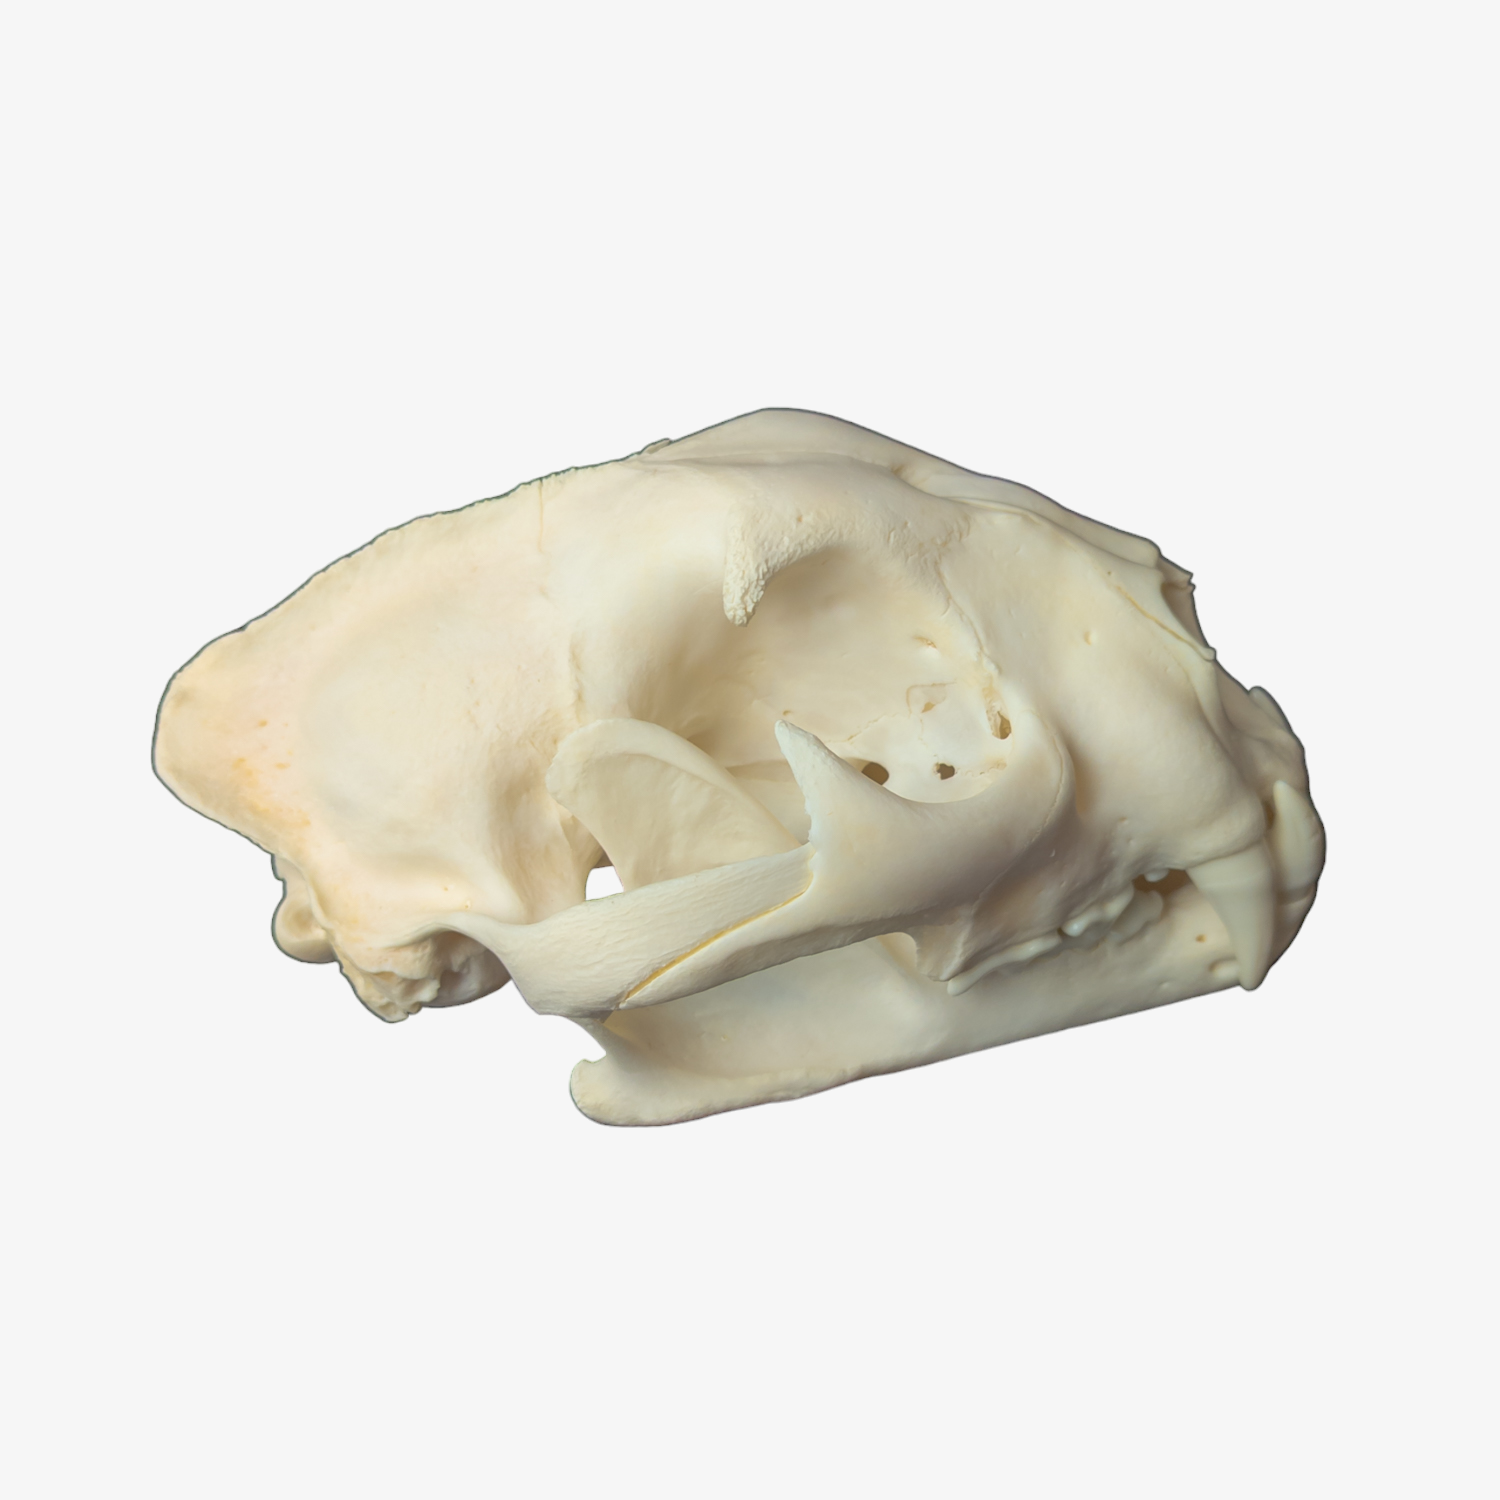 XXL Mountain Lion / Cougar Skull